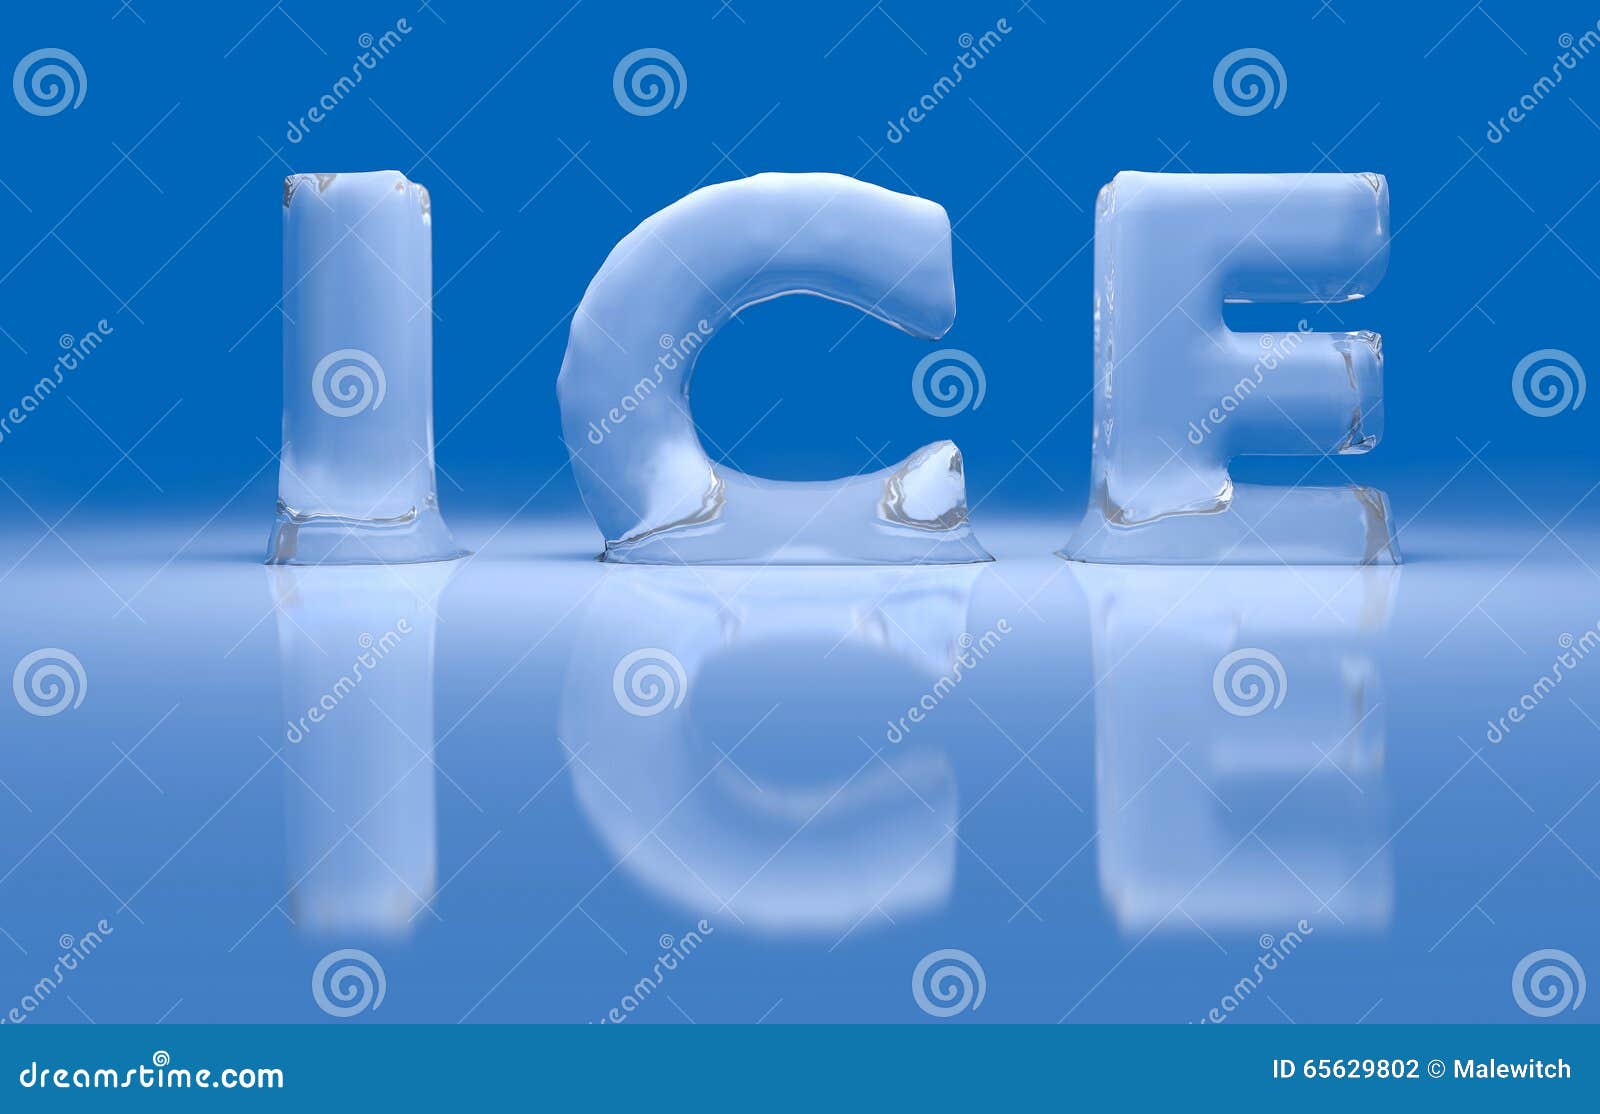 Лед 3 похожие